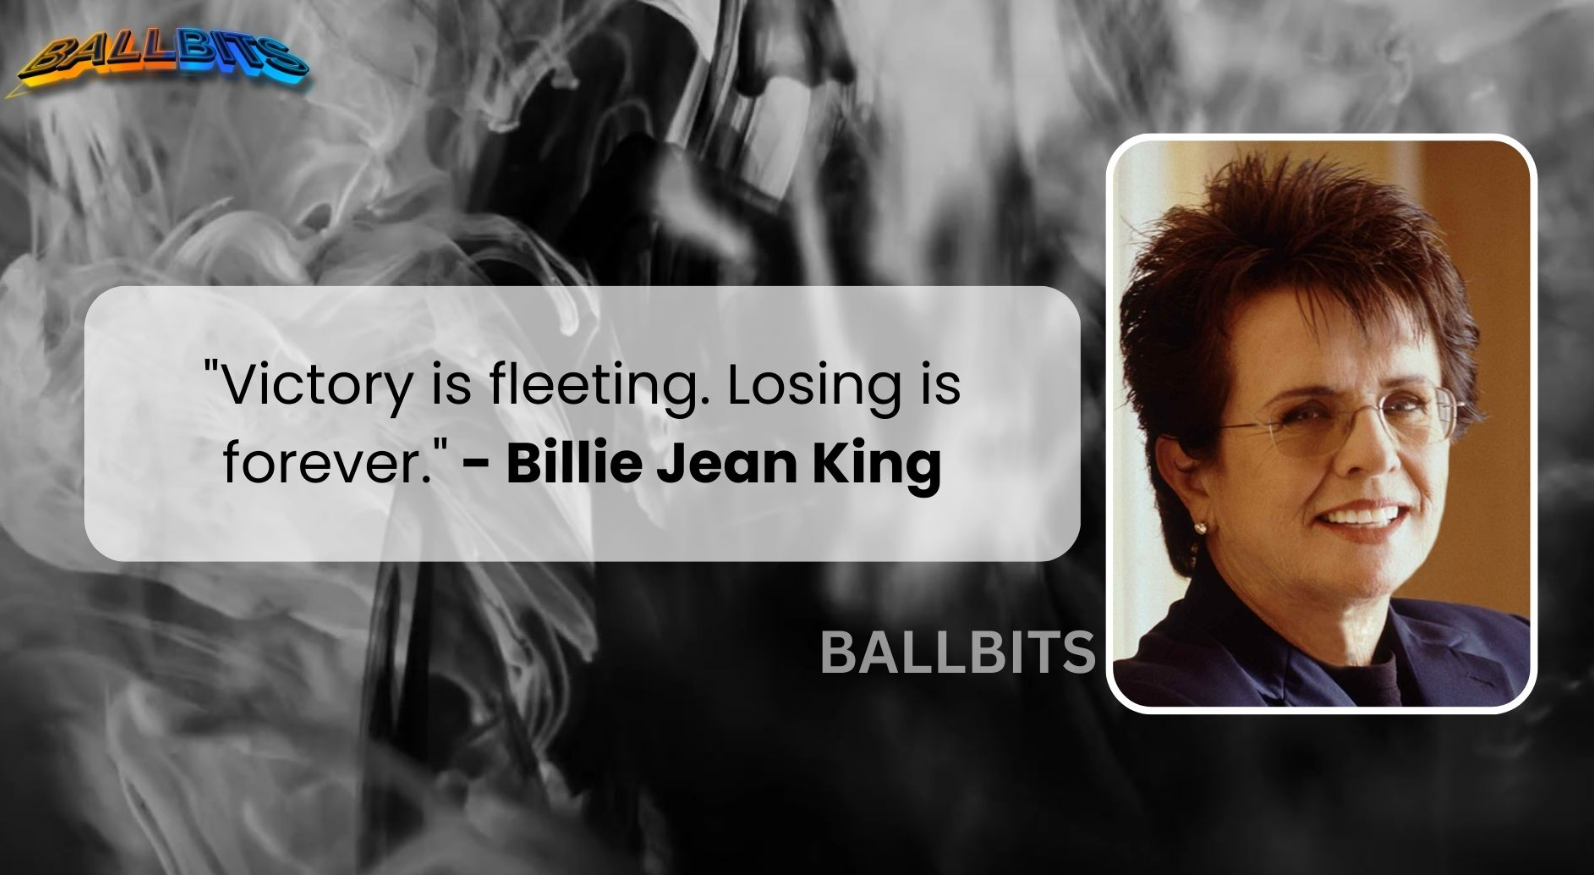 "Victory is fleeting. Losing is forever." - Billie Jean King